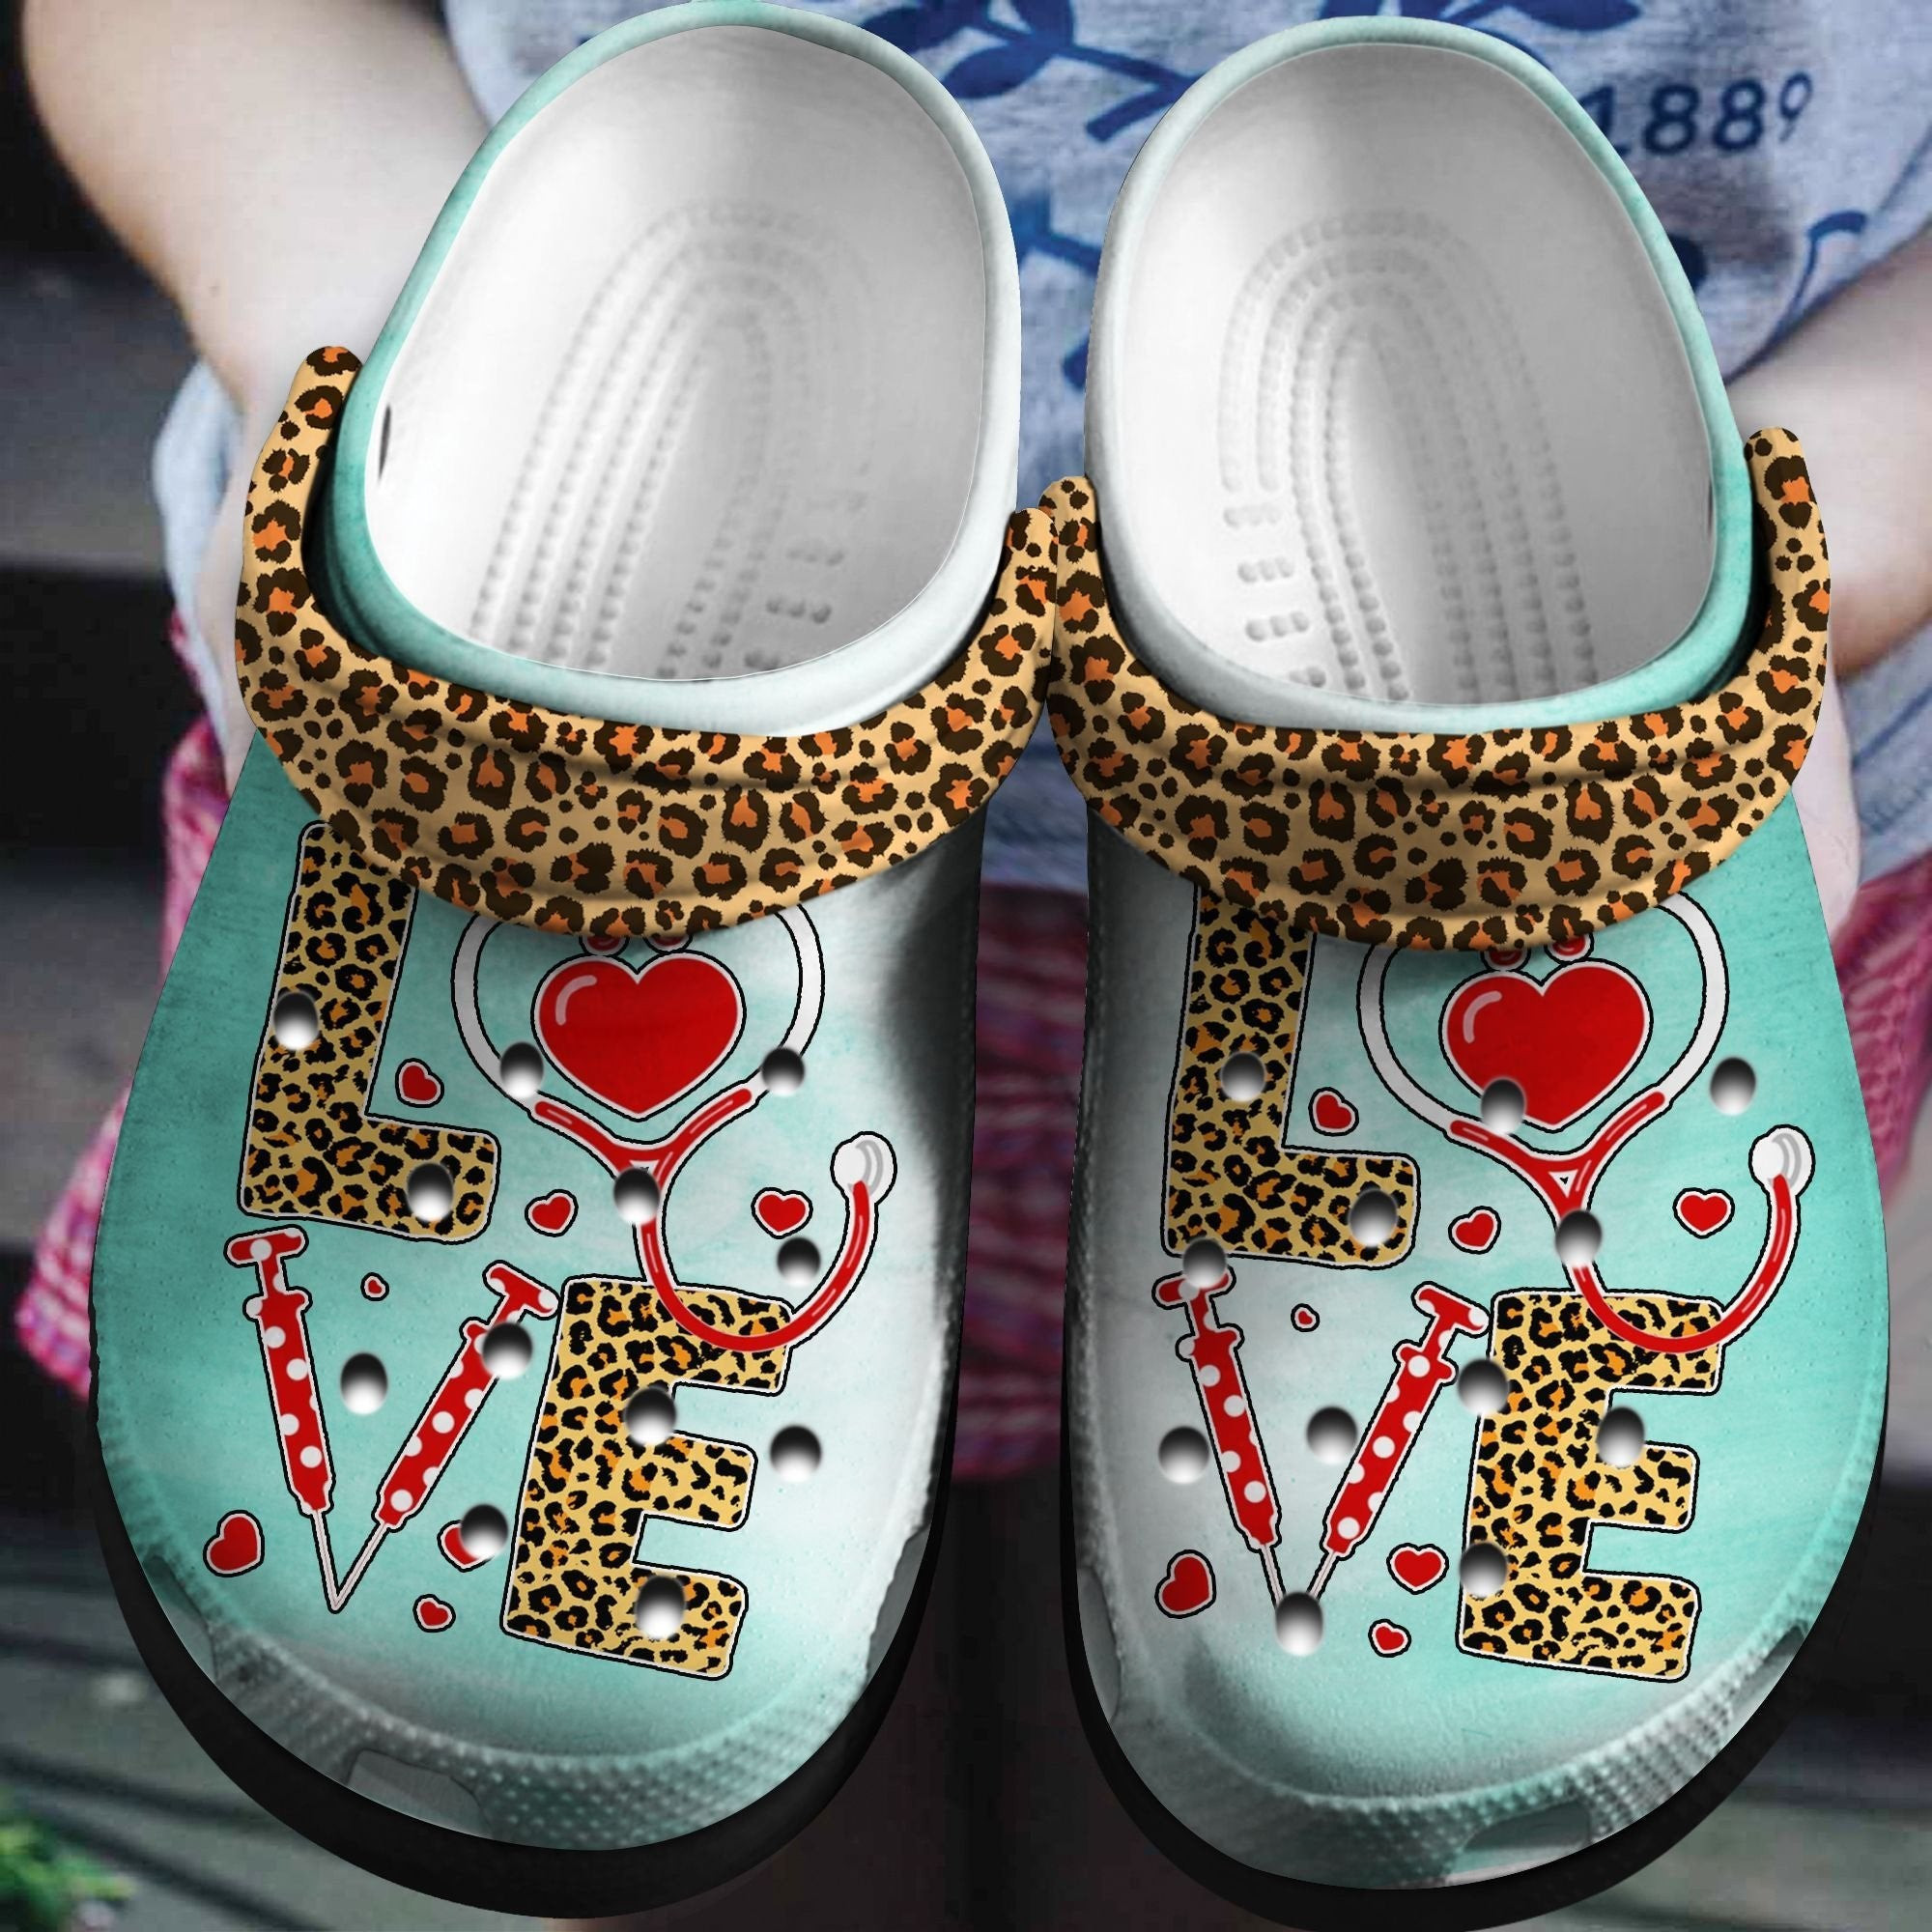 Leopard Nurse Crocs Shoes - Love Nurse Life Clogs Gift - Leopard-3Nr